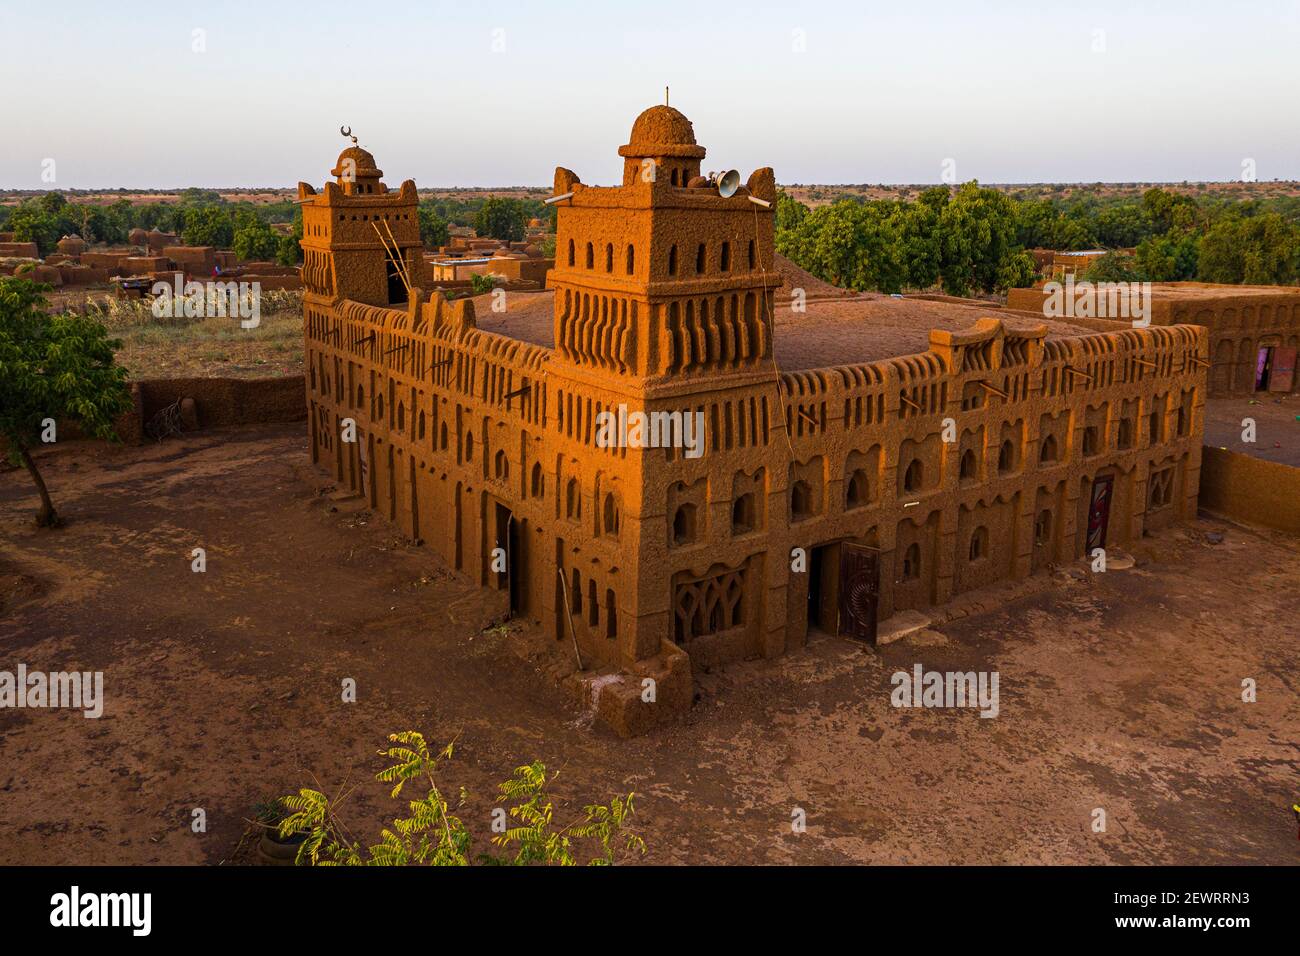 Aereo della moschea di stile architettonico sudano-Saheliana a Yamma, Sahel, Niger, Africa Foto Stock